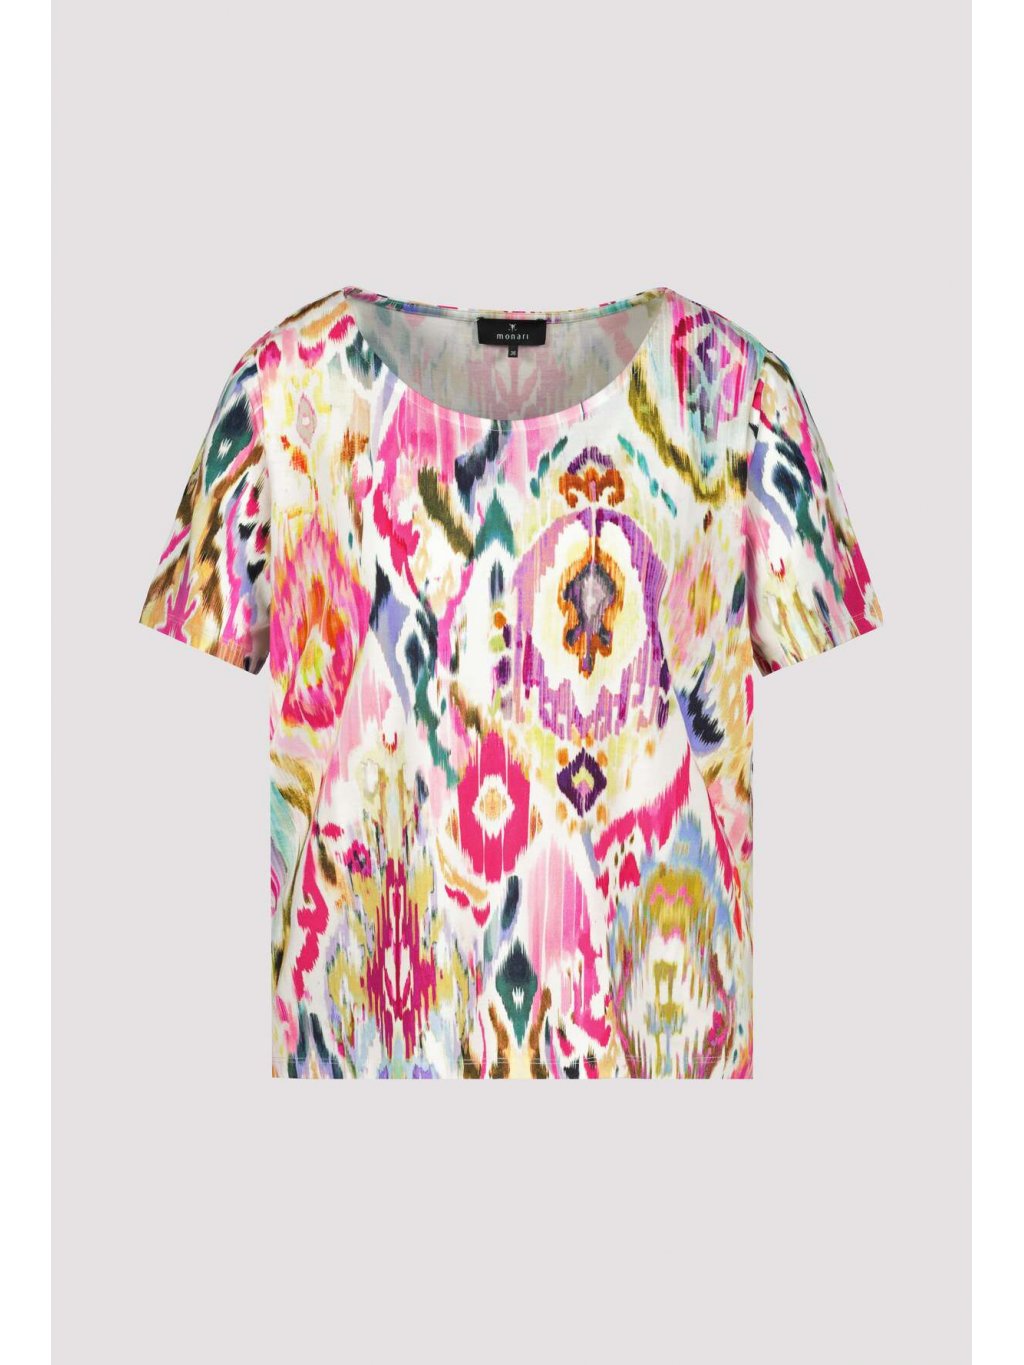 Tričko Monari 8715 růžové pestrobarevné se vzorem 